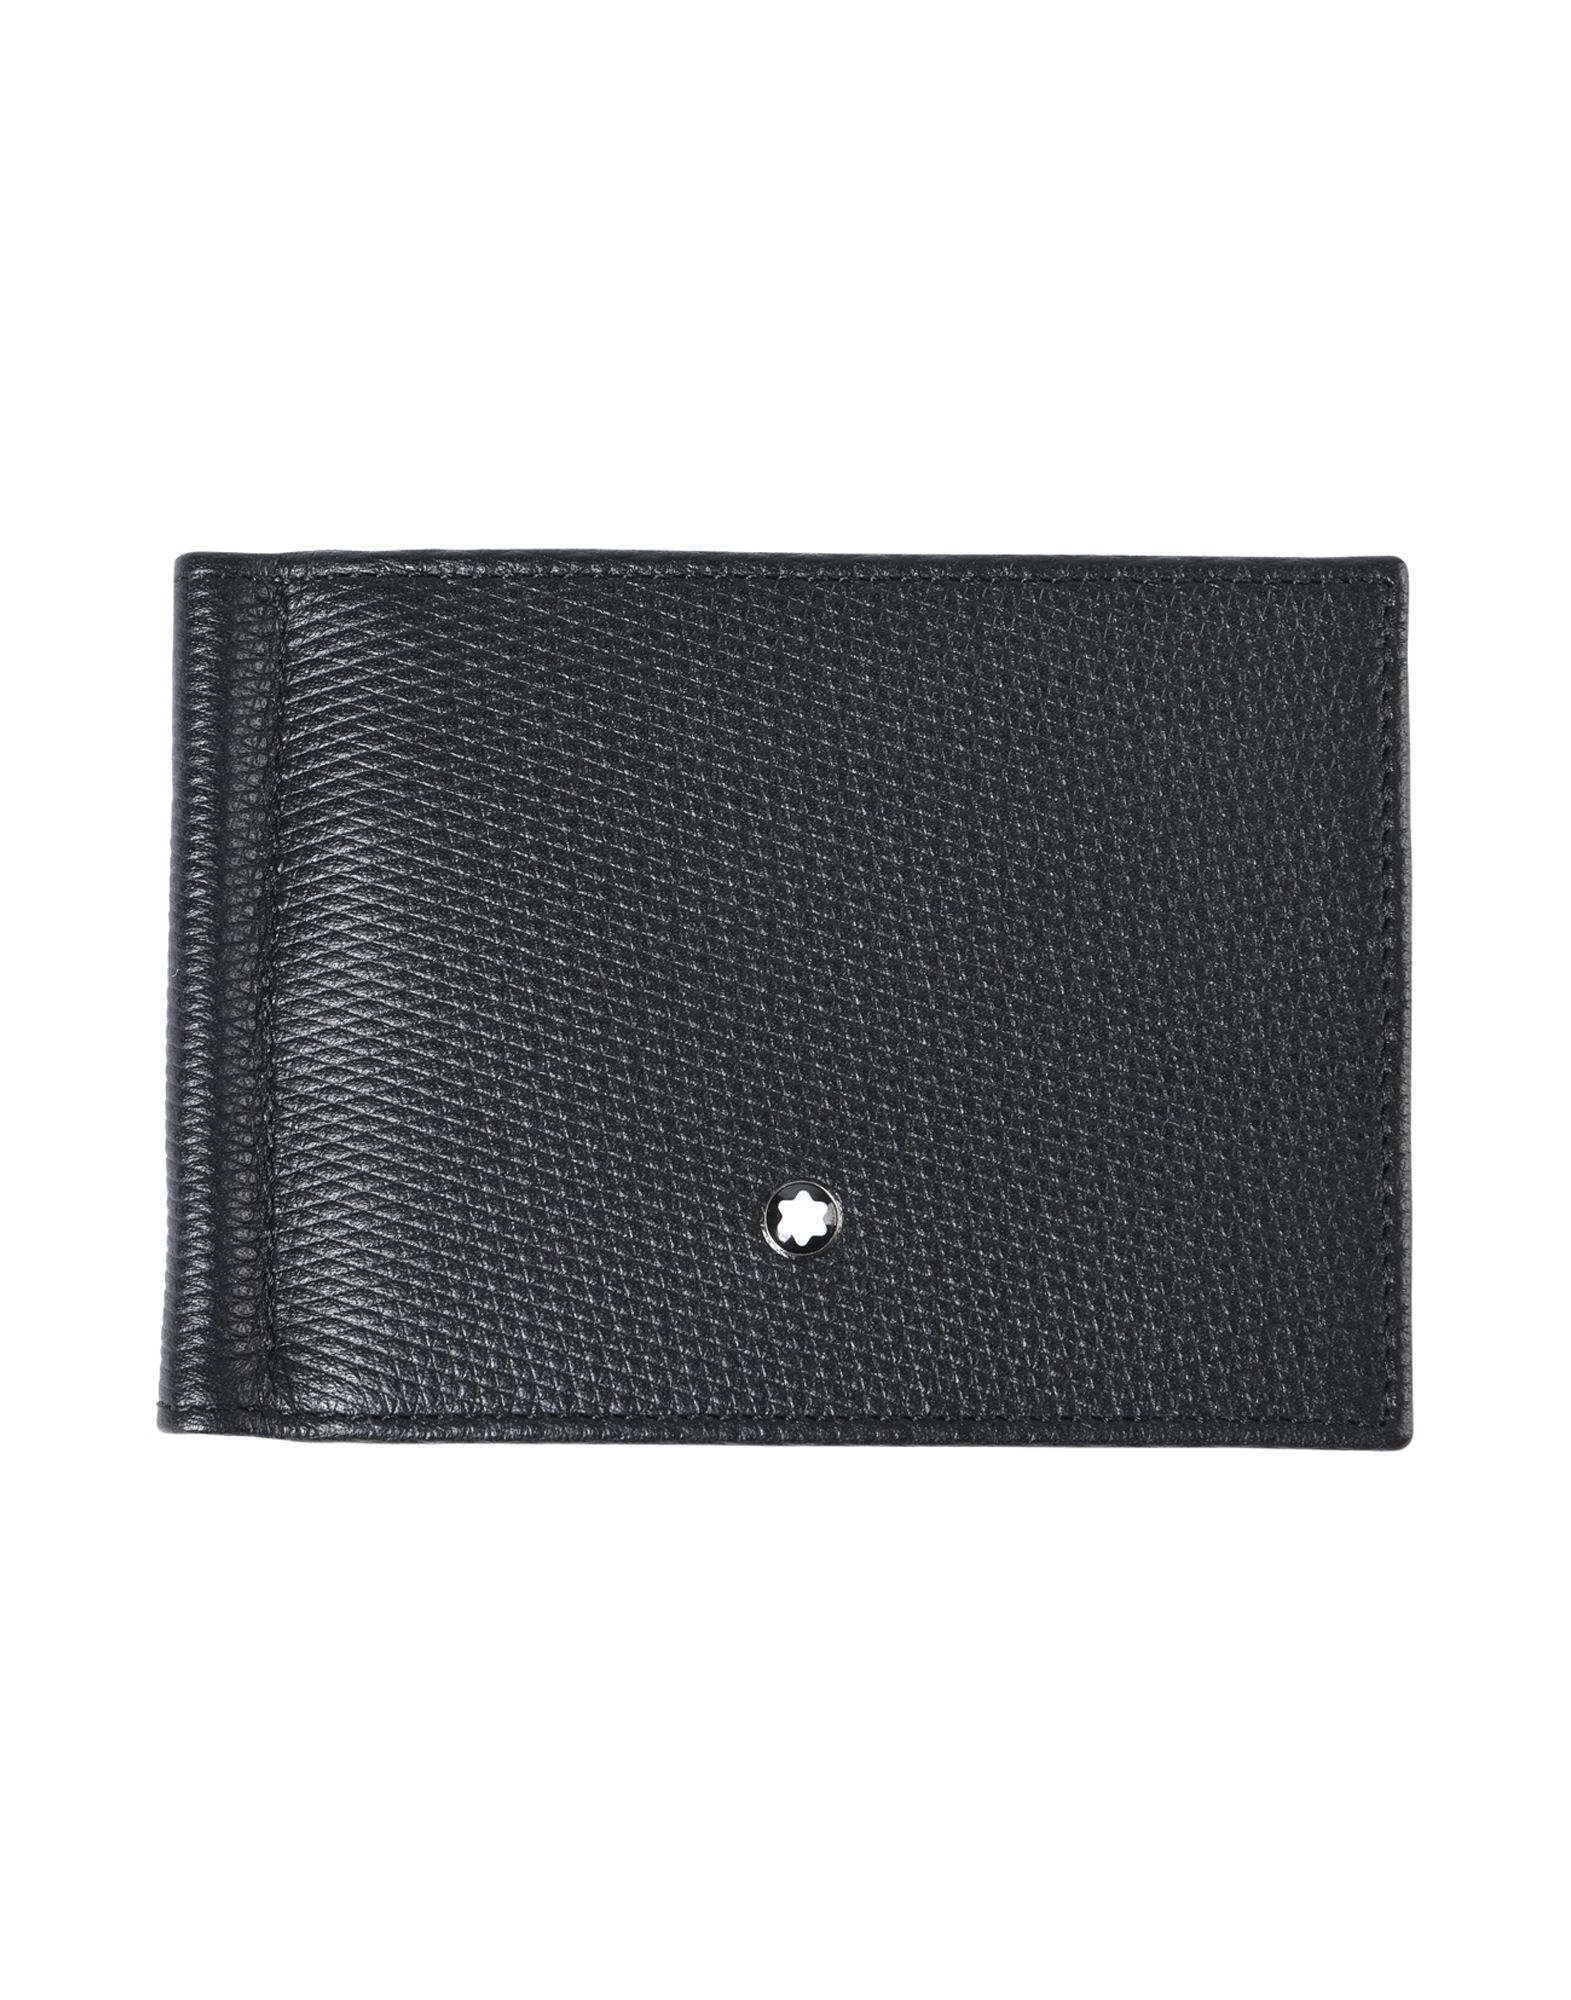 《セール開催中》MONTBLANC メンズ 財布 ブラック 柔らかめの牛革 Wallet 6cc with Money Clip Small